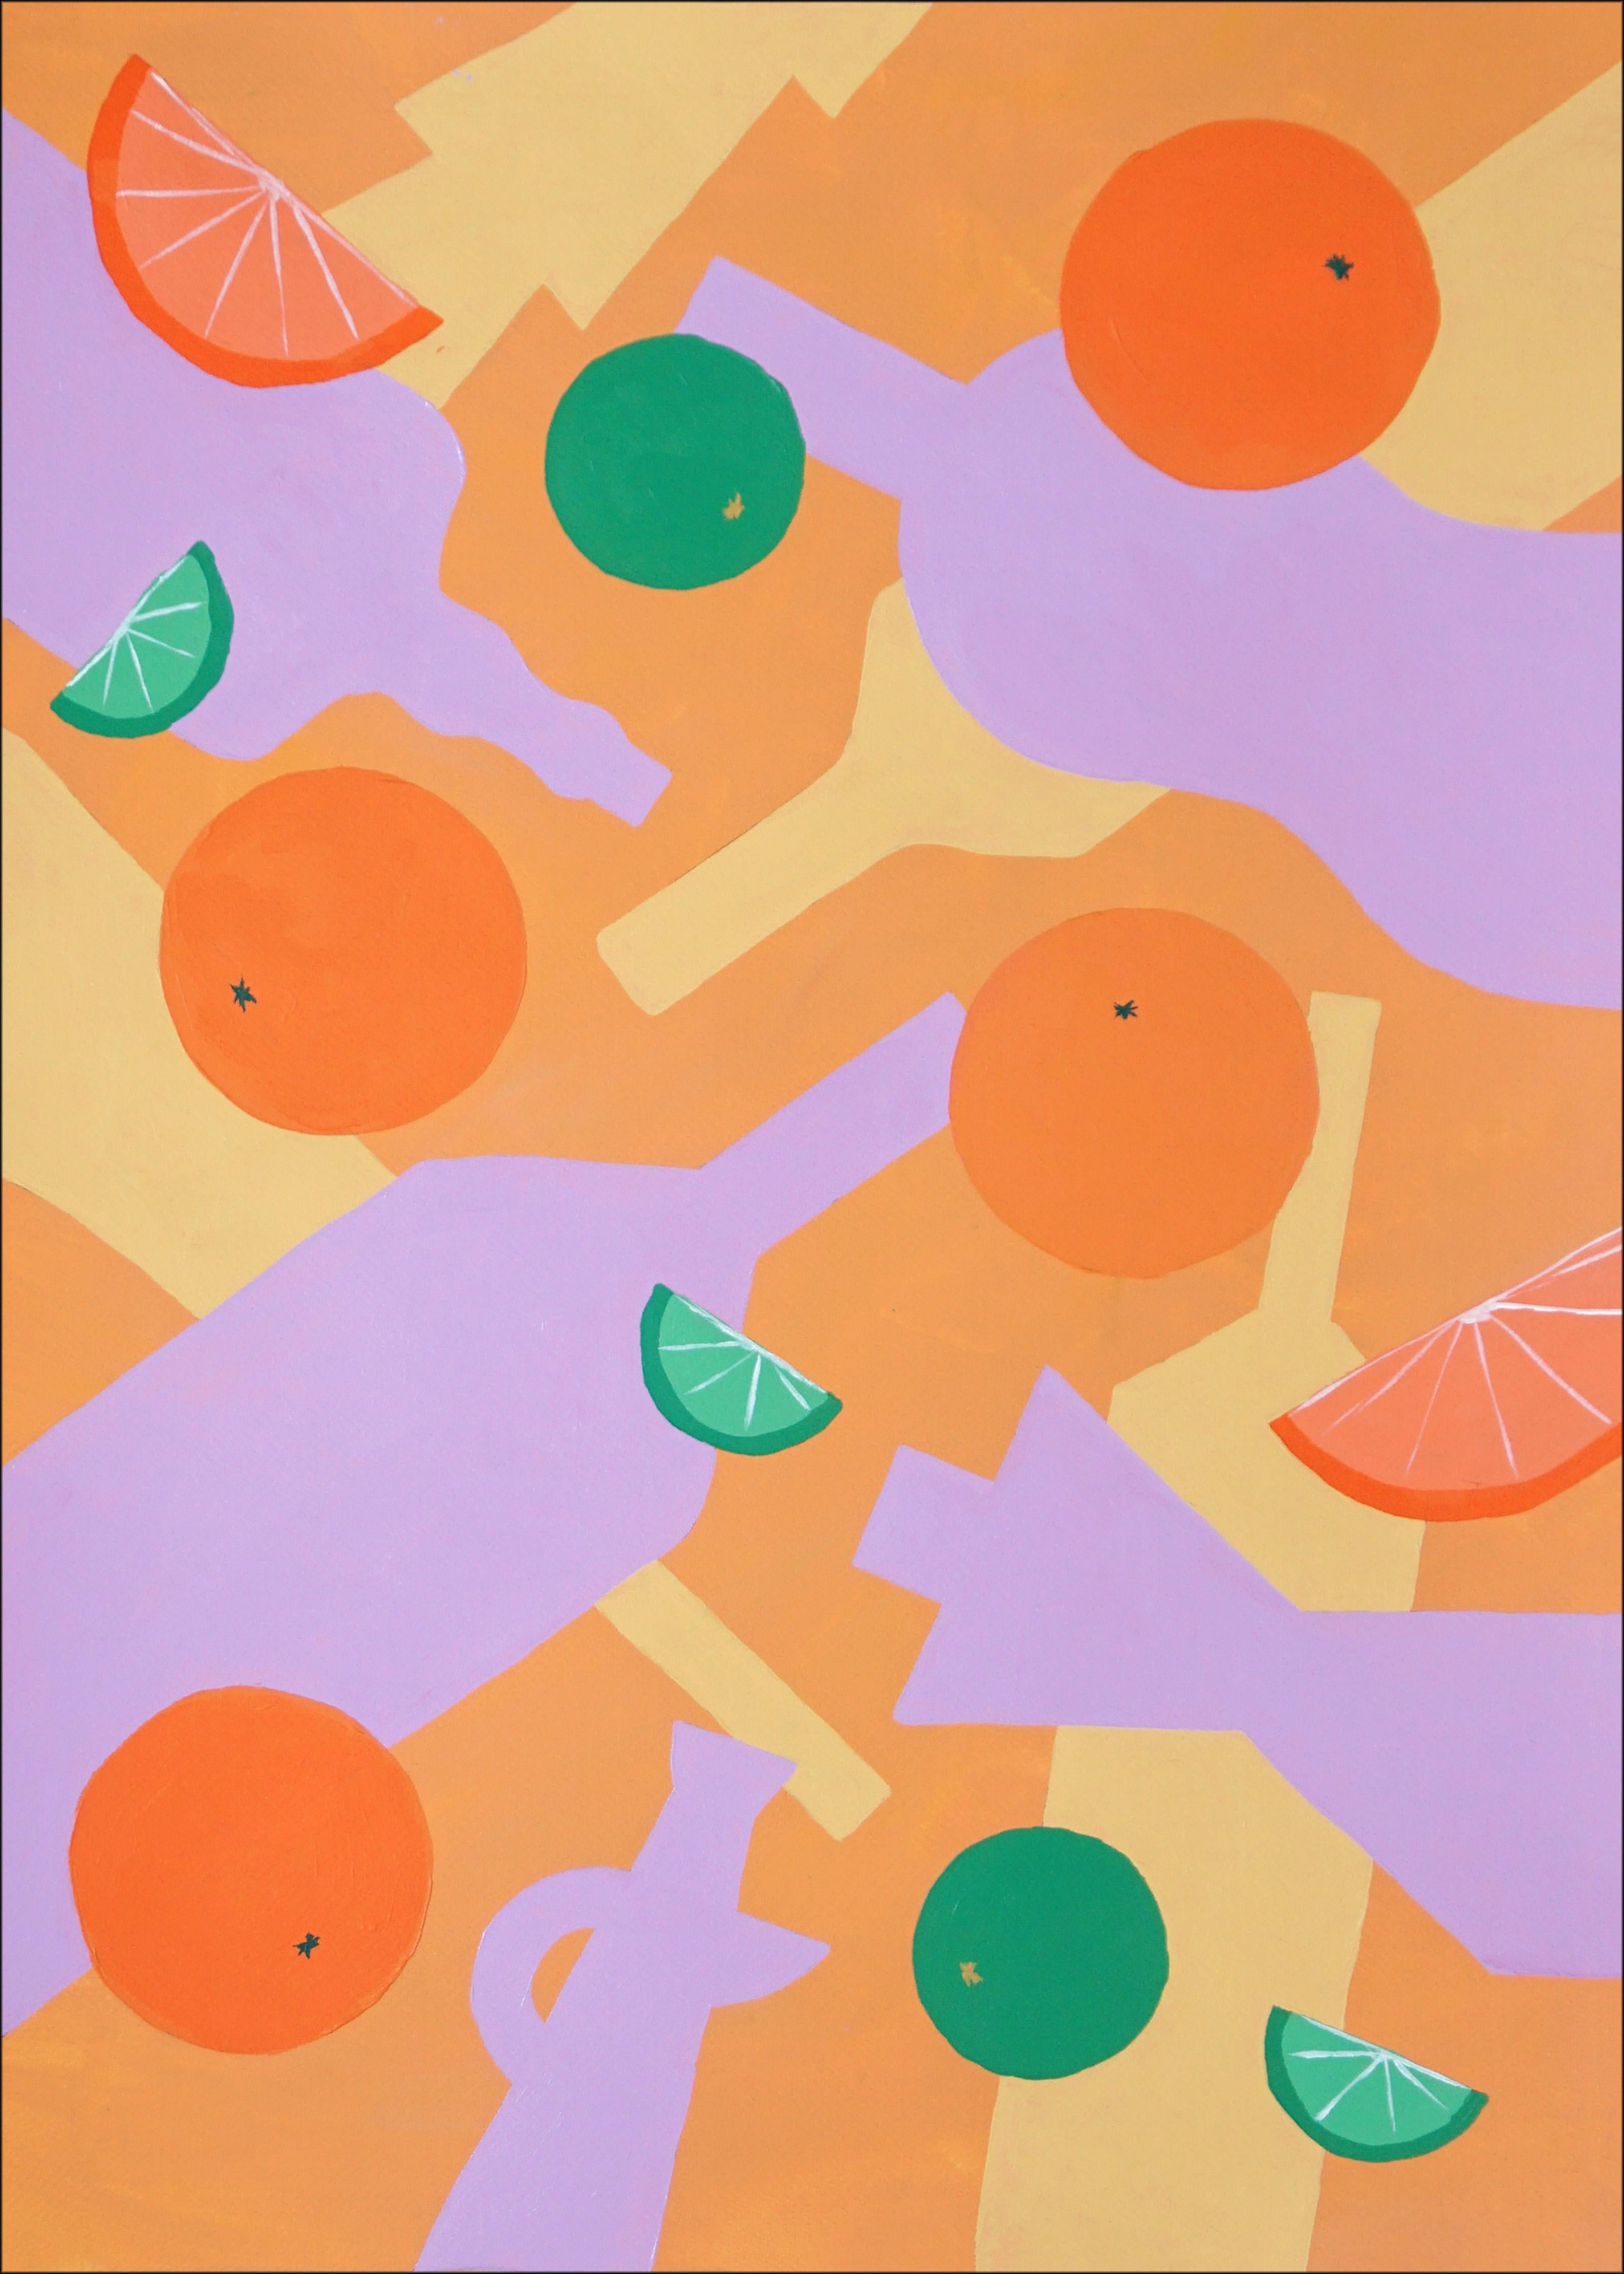 Flaschen und fallende Zitrusfrüchte, Stillleben-Muster, orange-lila Silhouette